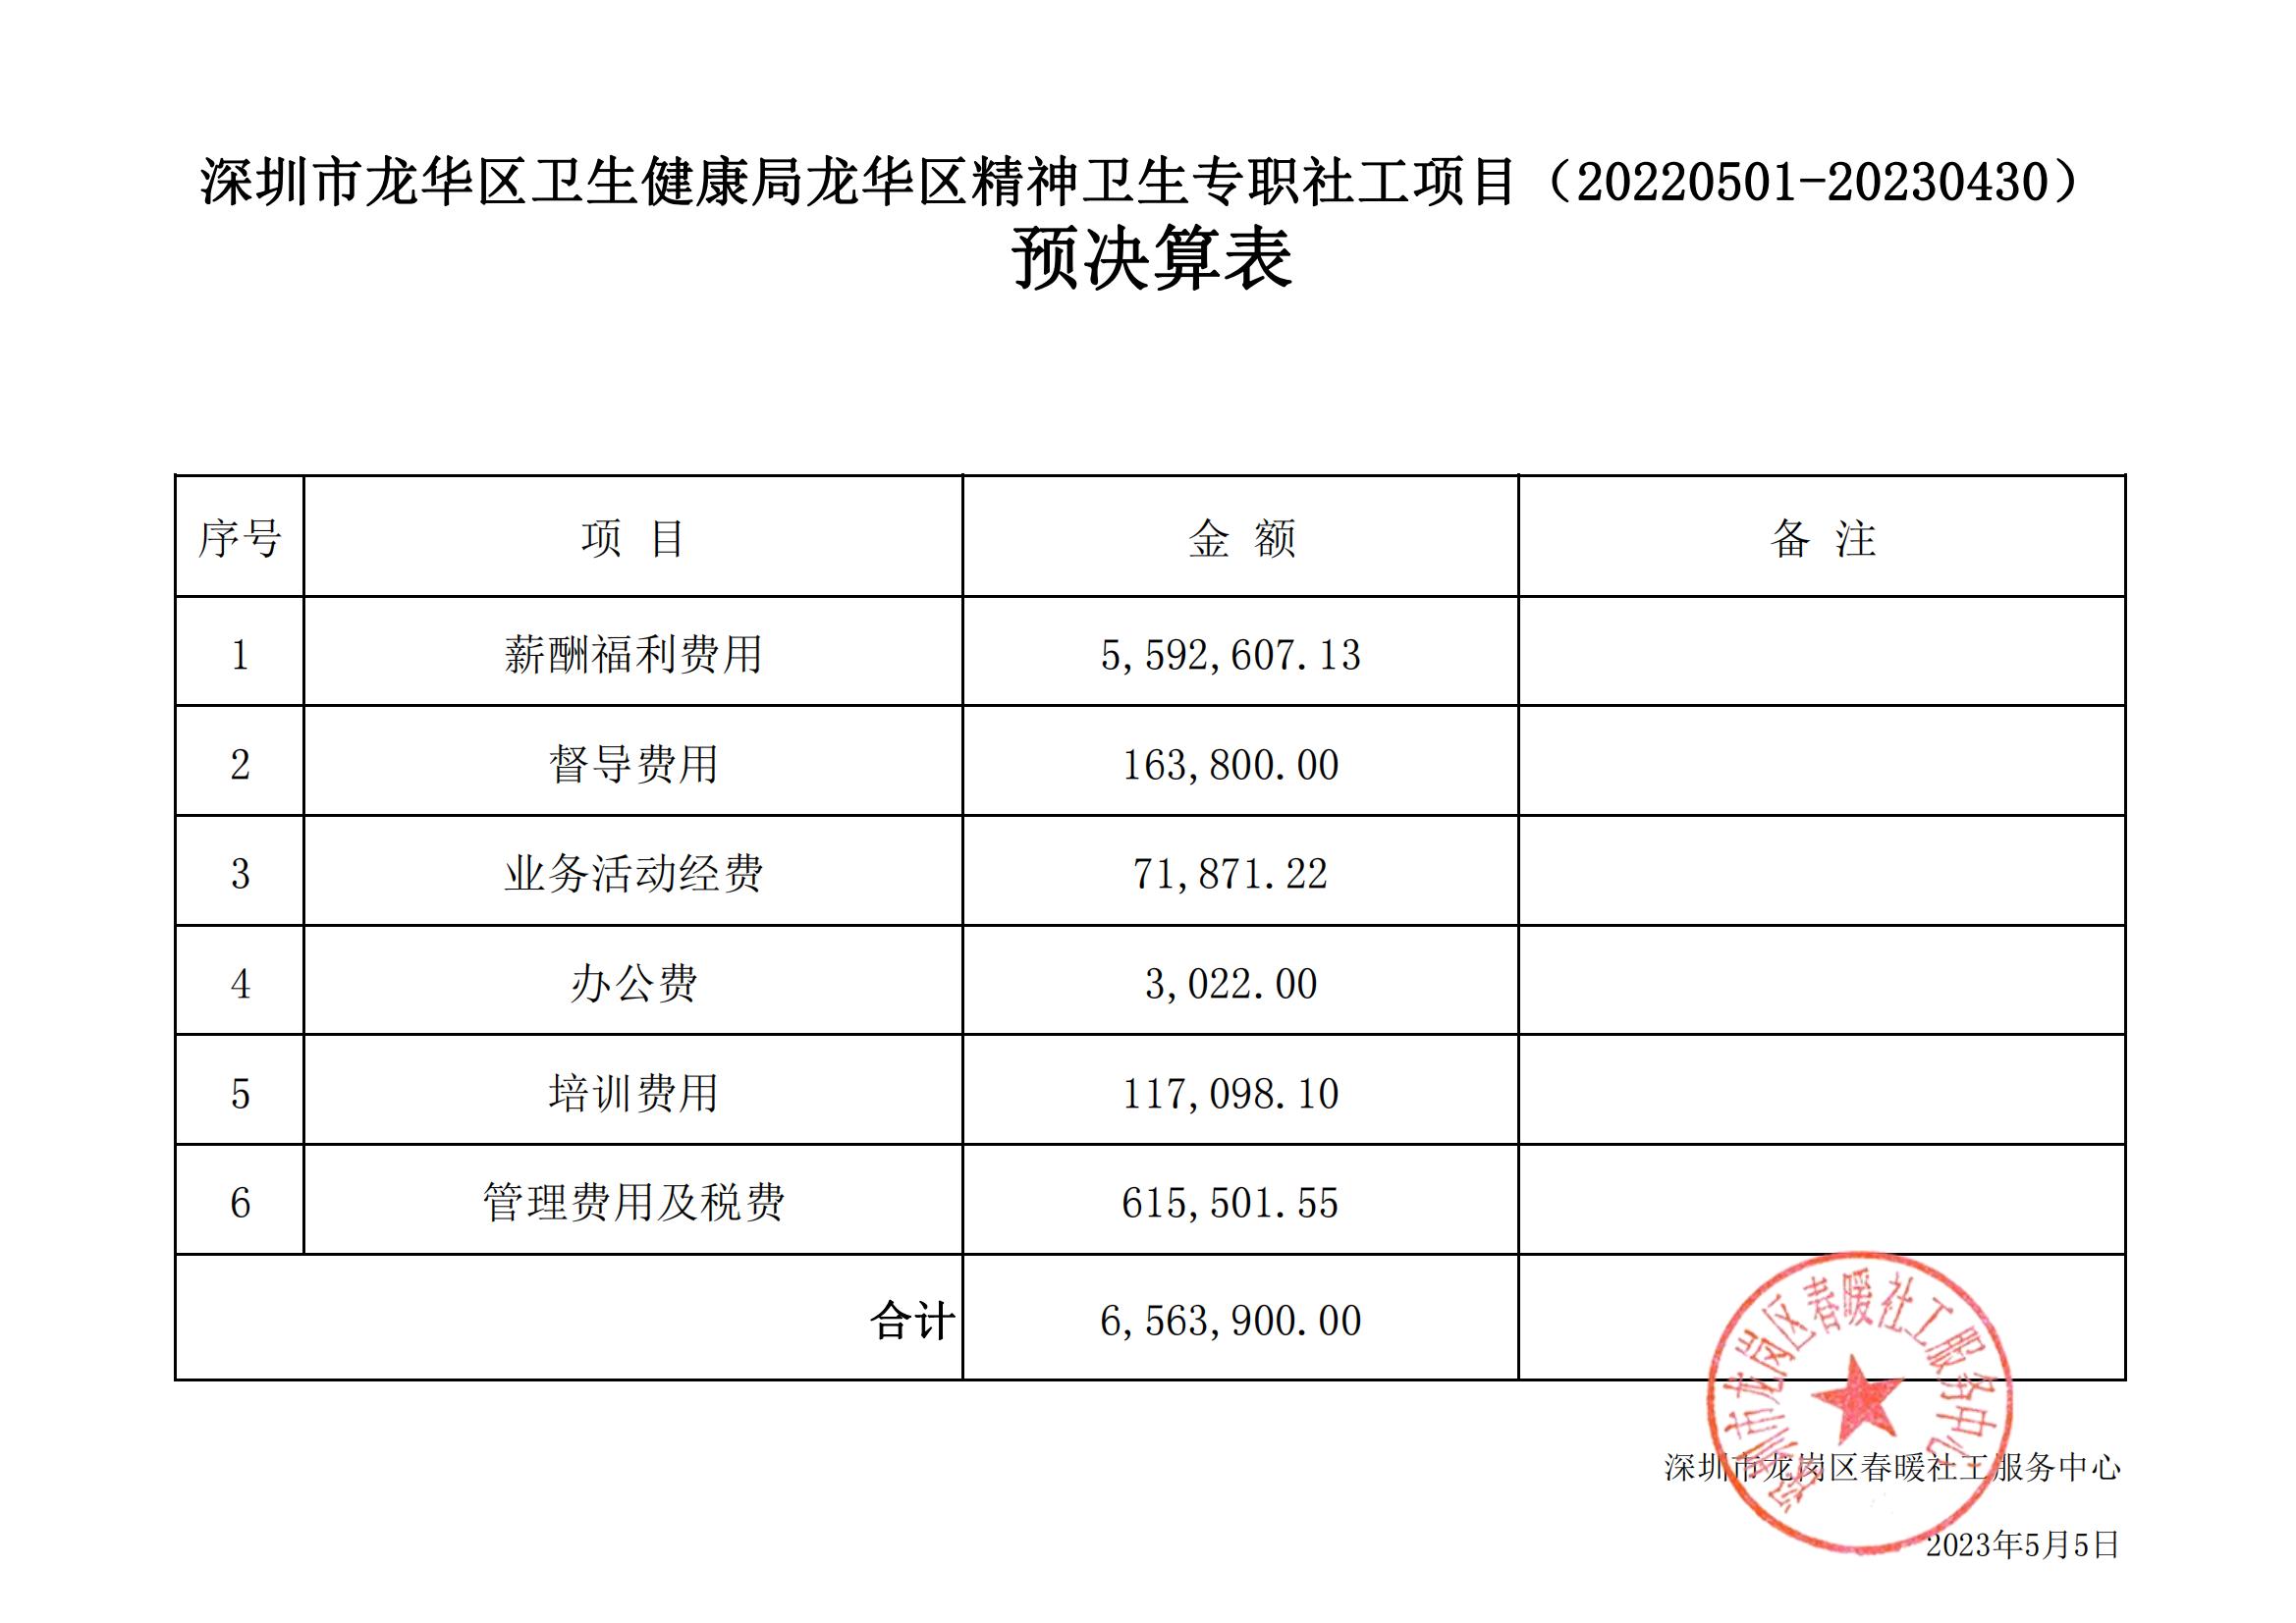 深圳市龙华区卫生健康局龙华区精神卫生专职社工项目（20220501-20230430）预决算表公示